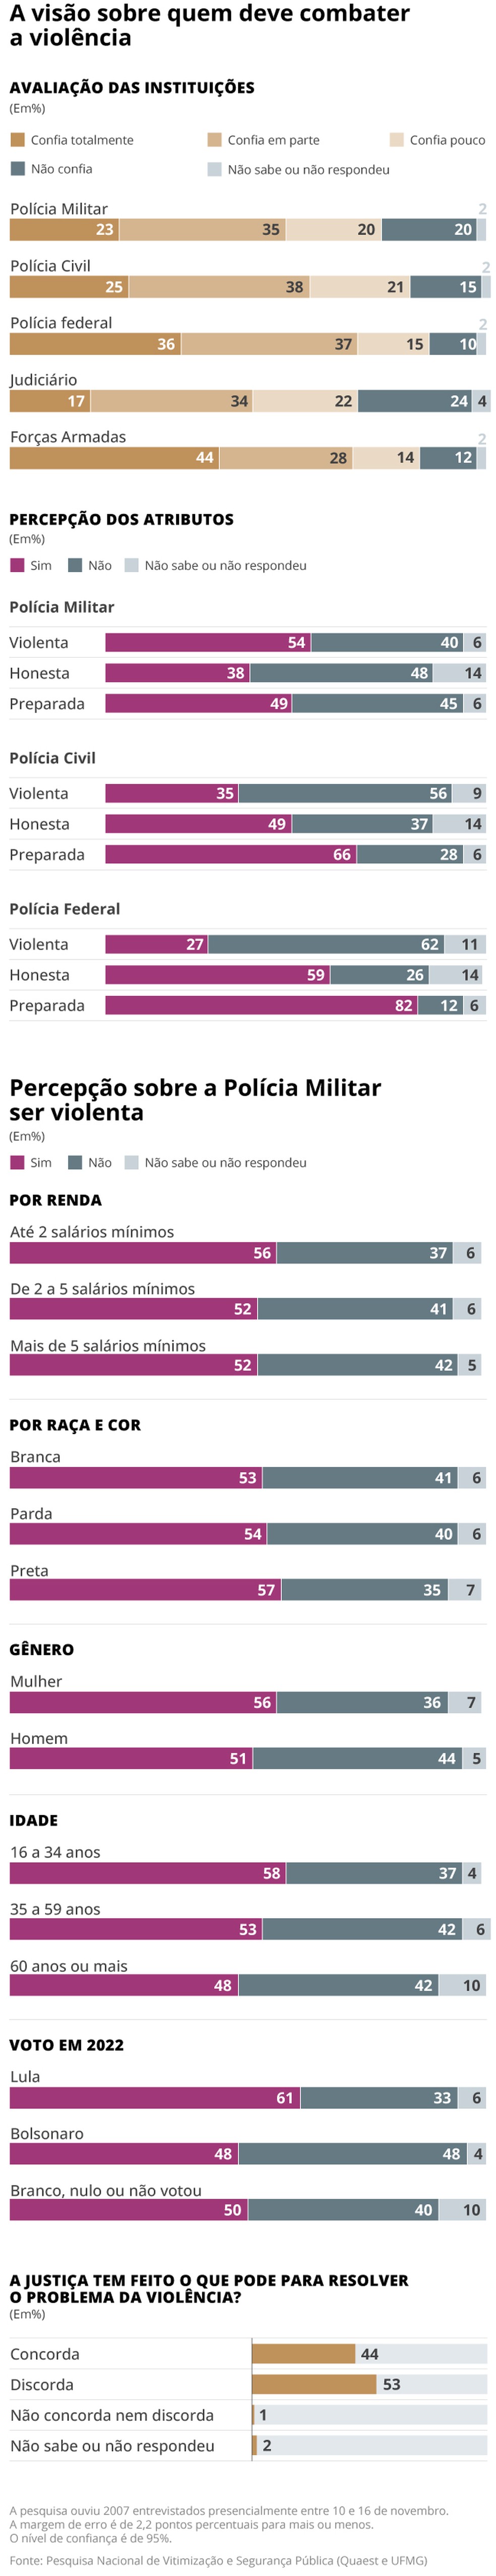 Pesquisa da Quaest e UFMG mostra avaliação dos brasileiros sobre segurança pública — Foto: Editoria de Arte